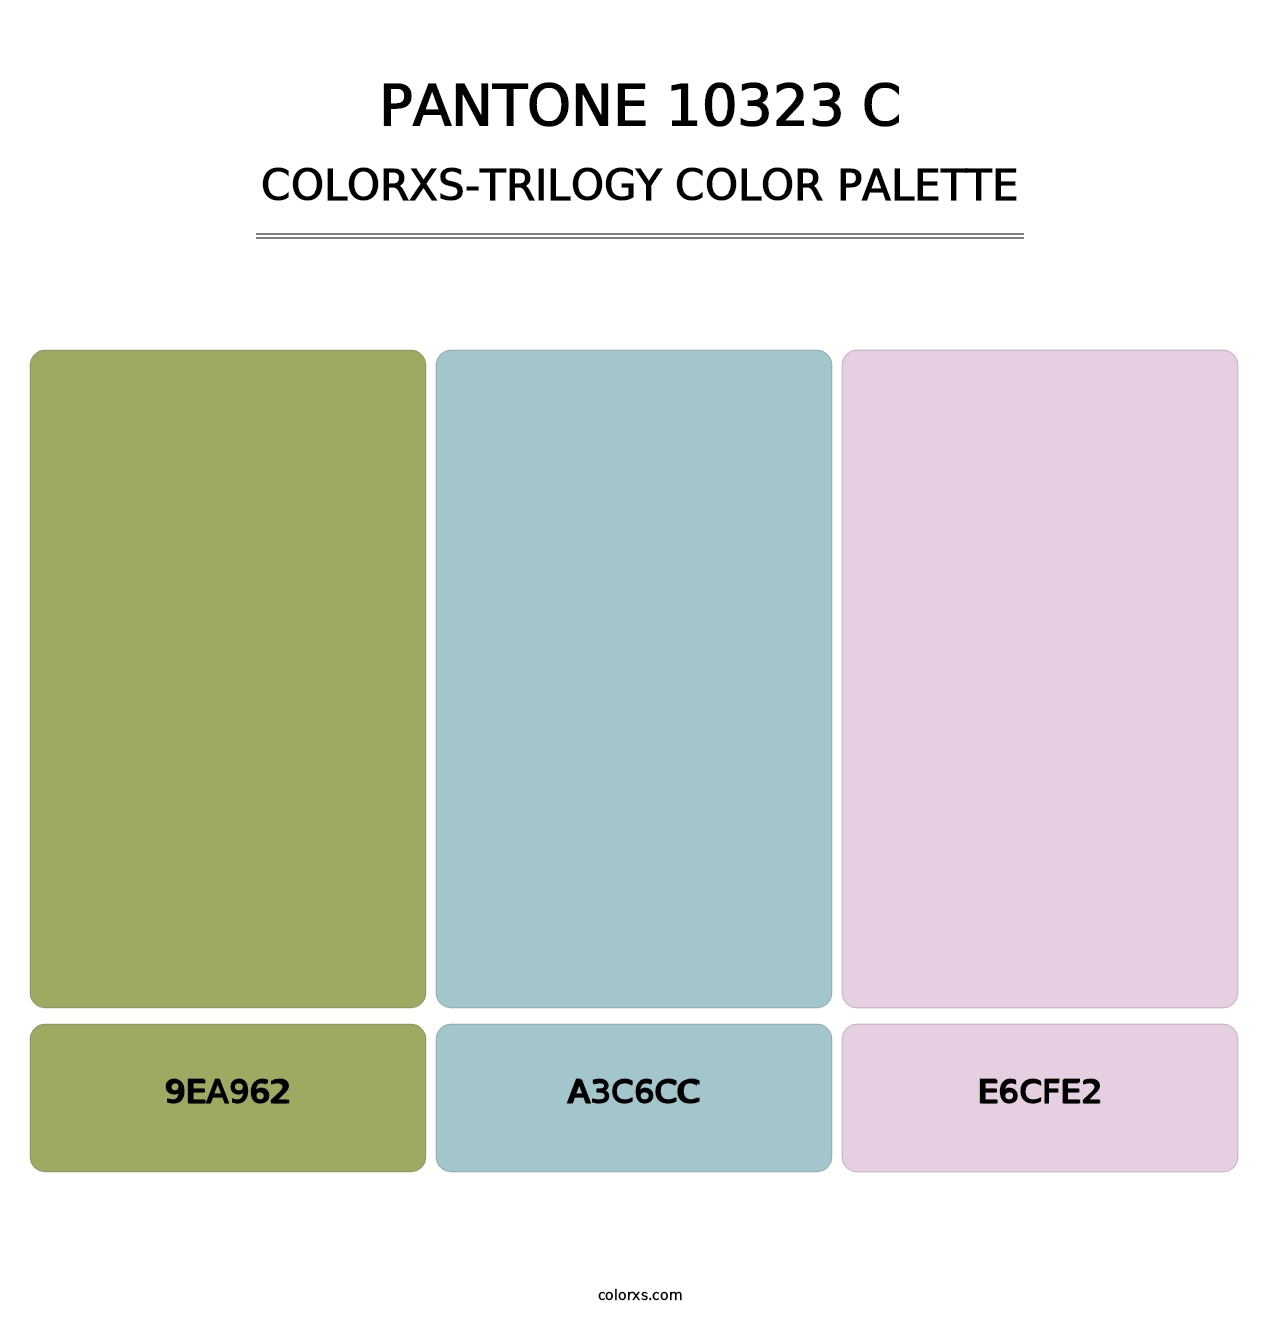 PANTONE 10323 C - Colorxs Trilogy Palette